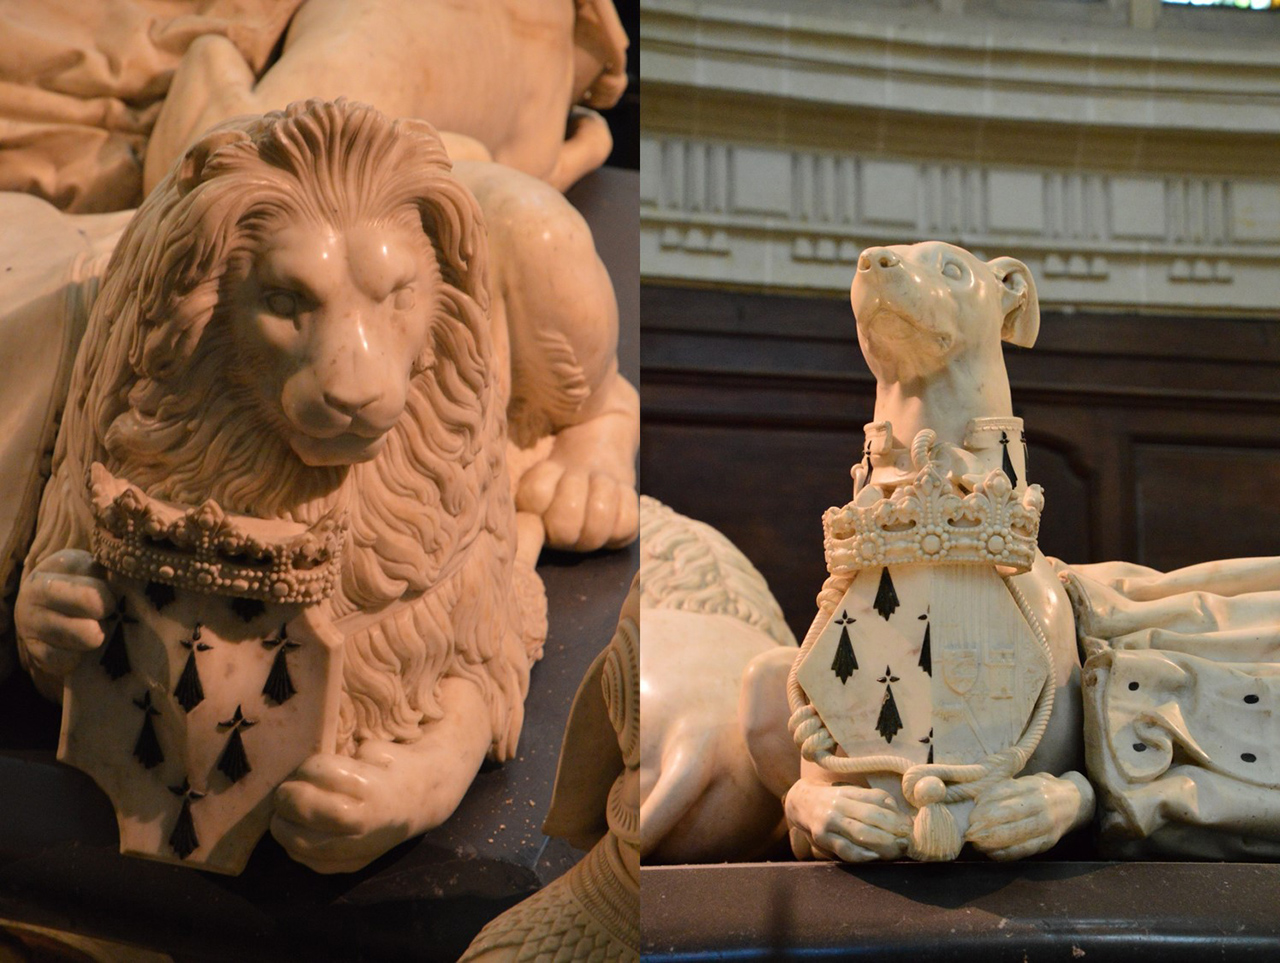 프랑소아 2세의 석관을 지키고 있는 사자와 그레이하운드 조각상이다.